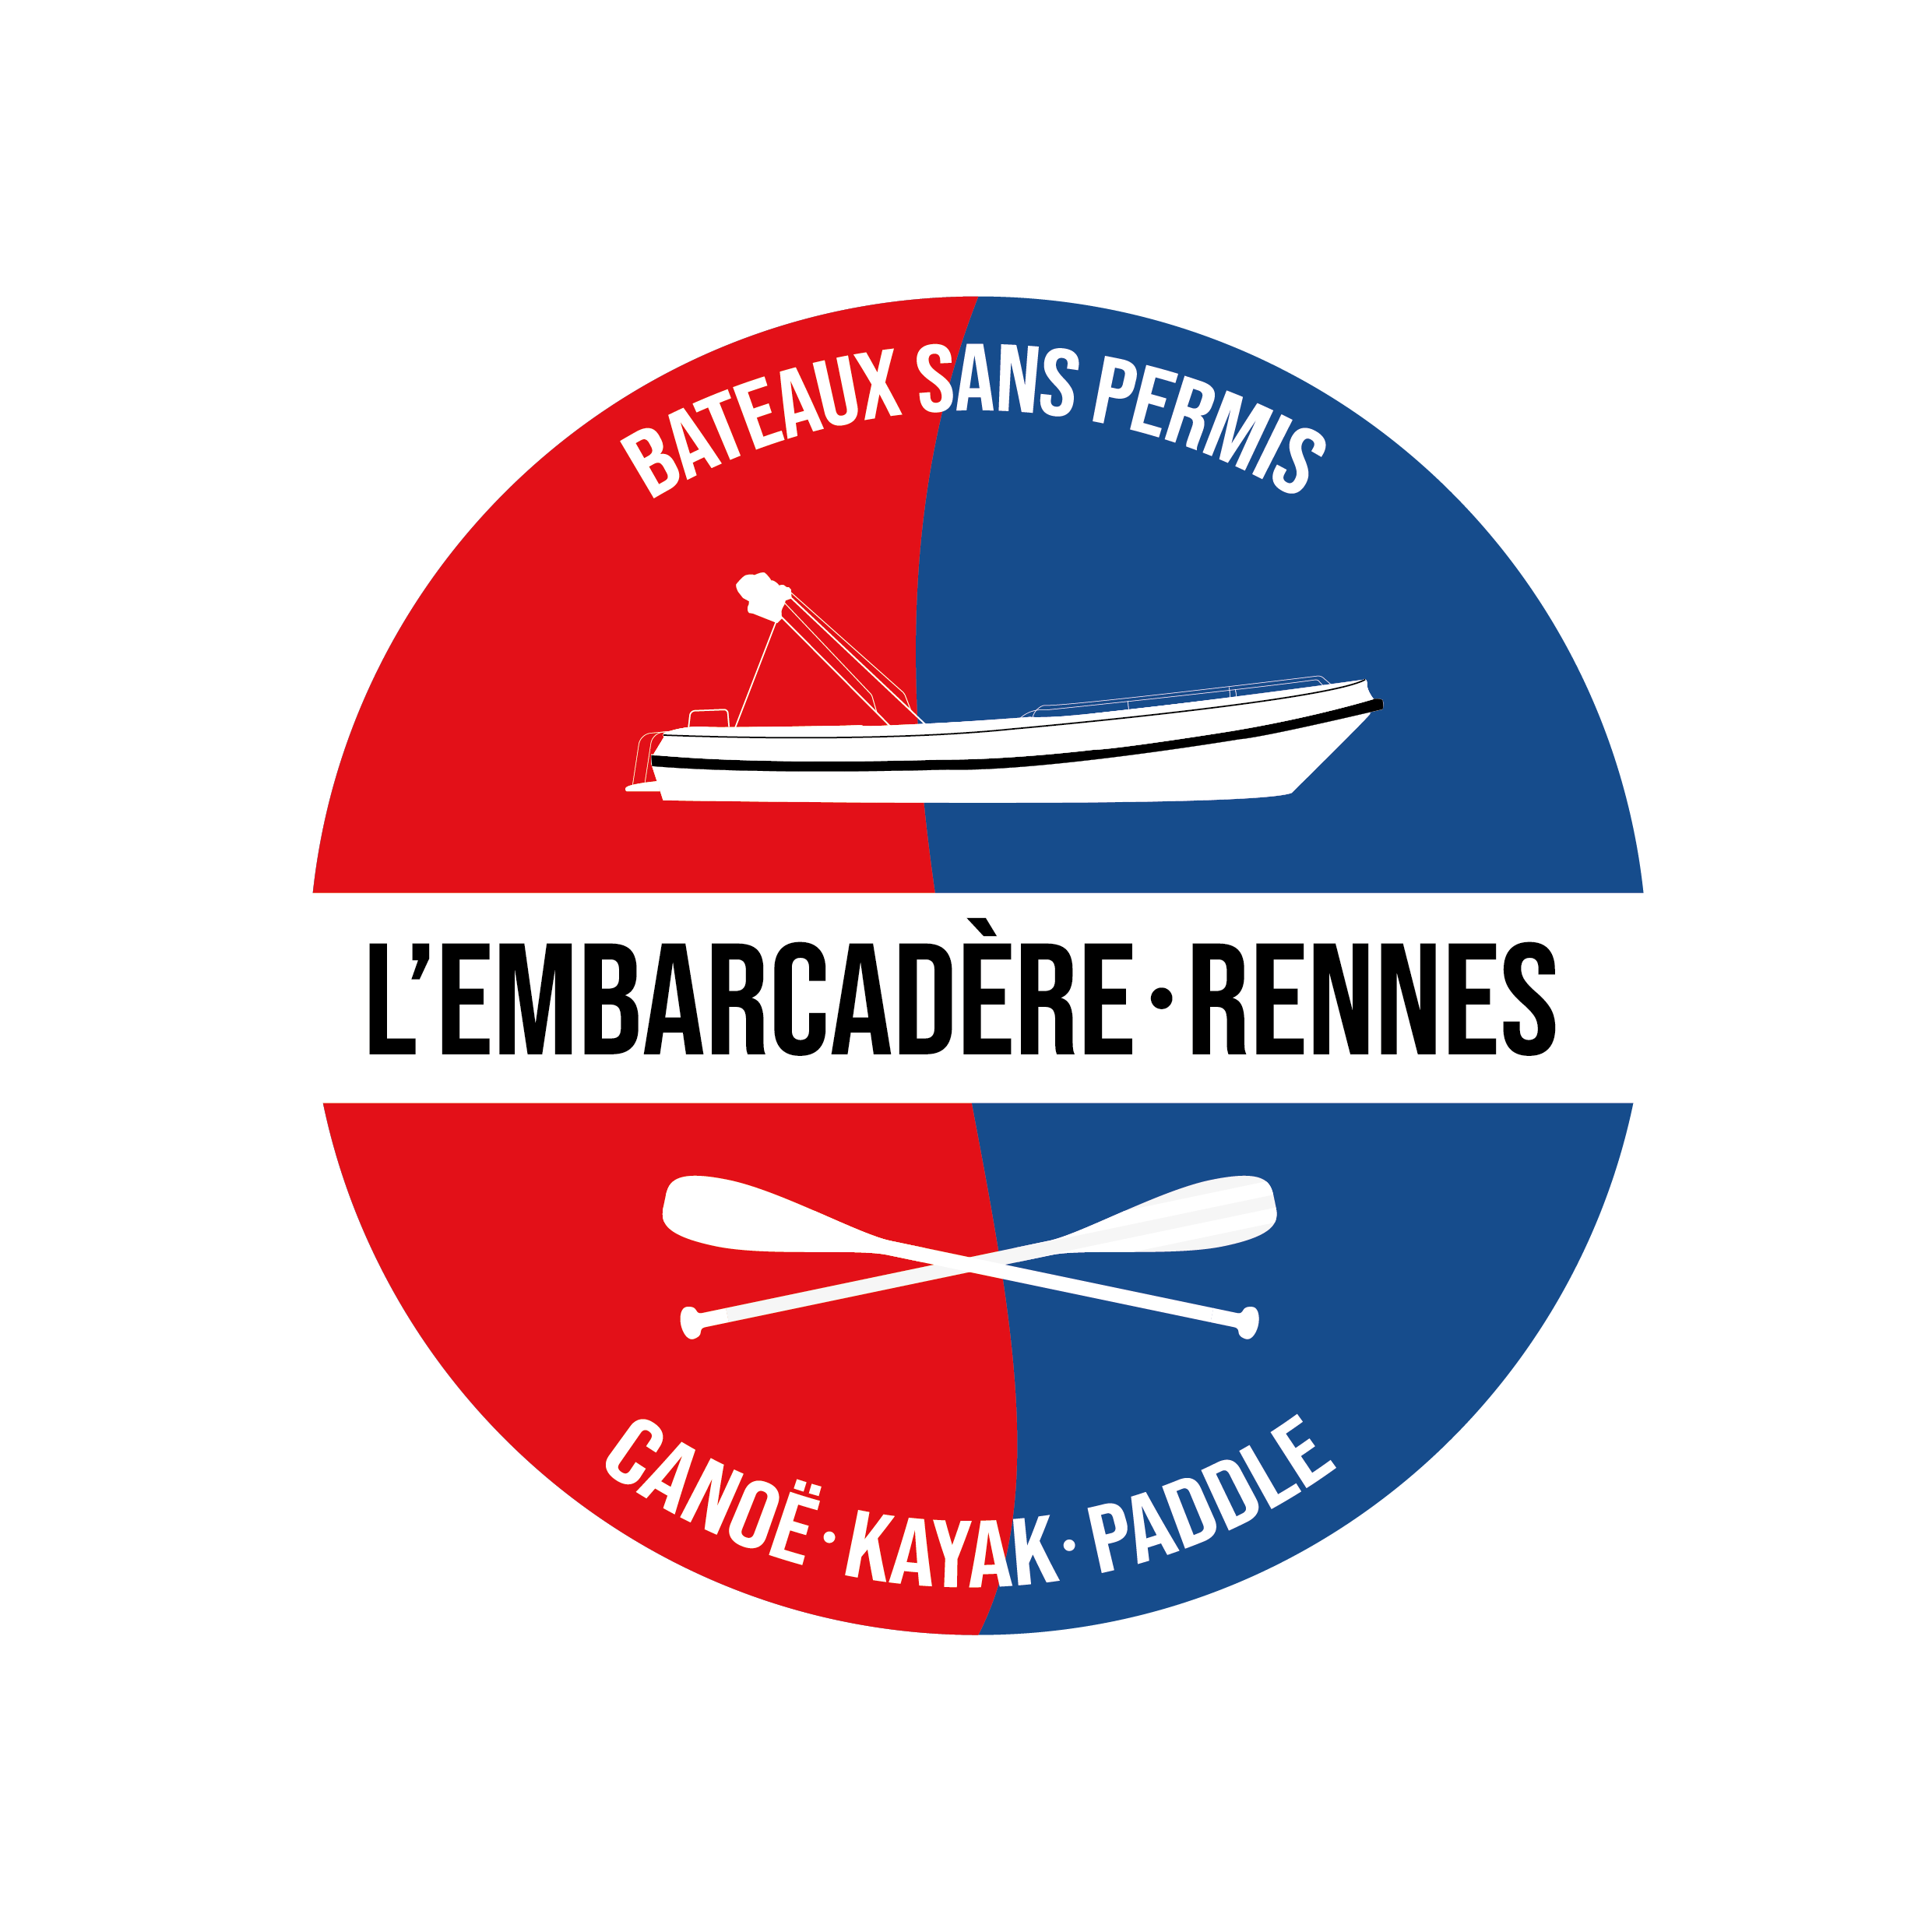 L'embarcadere - Rennes